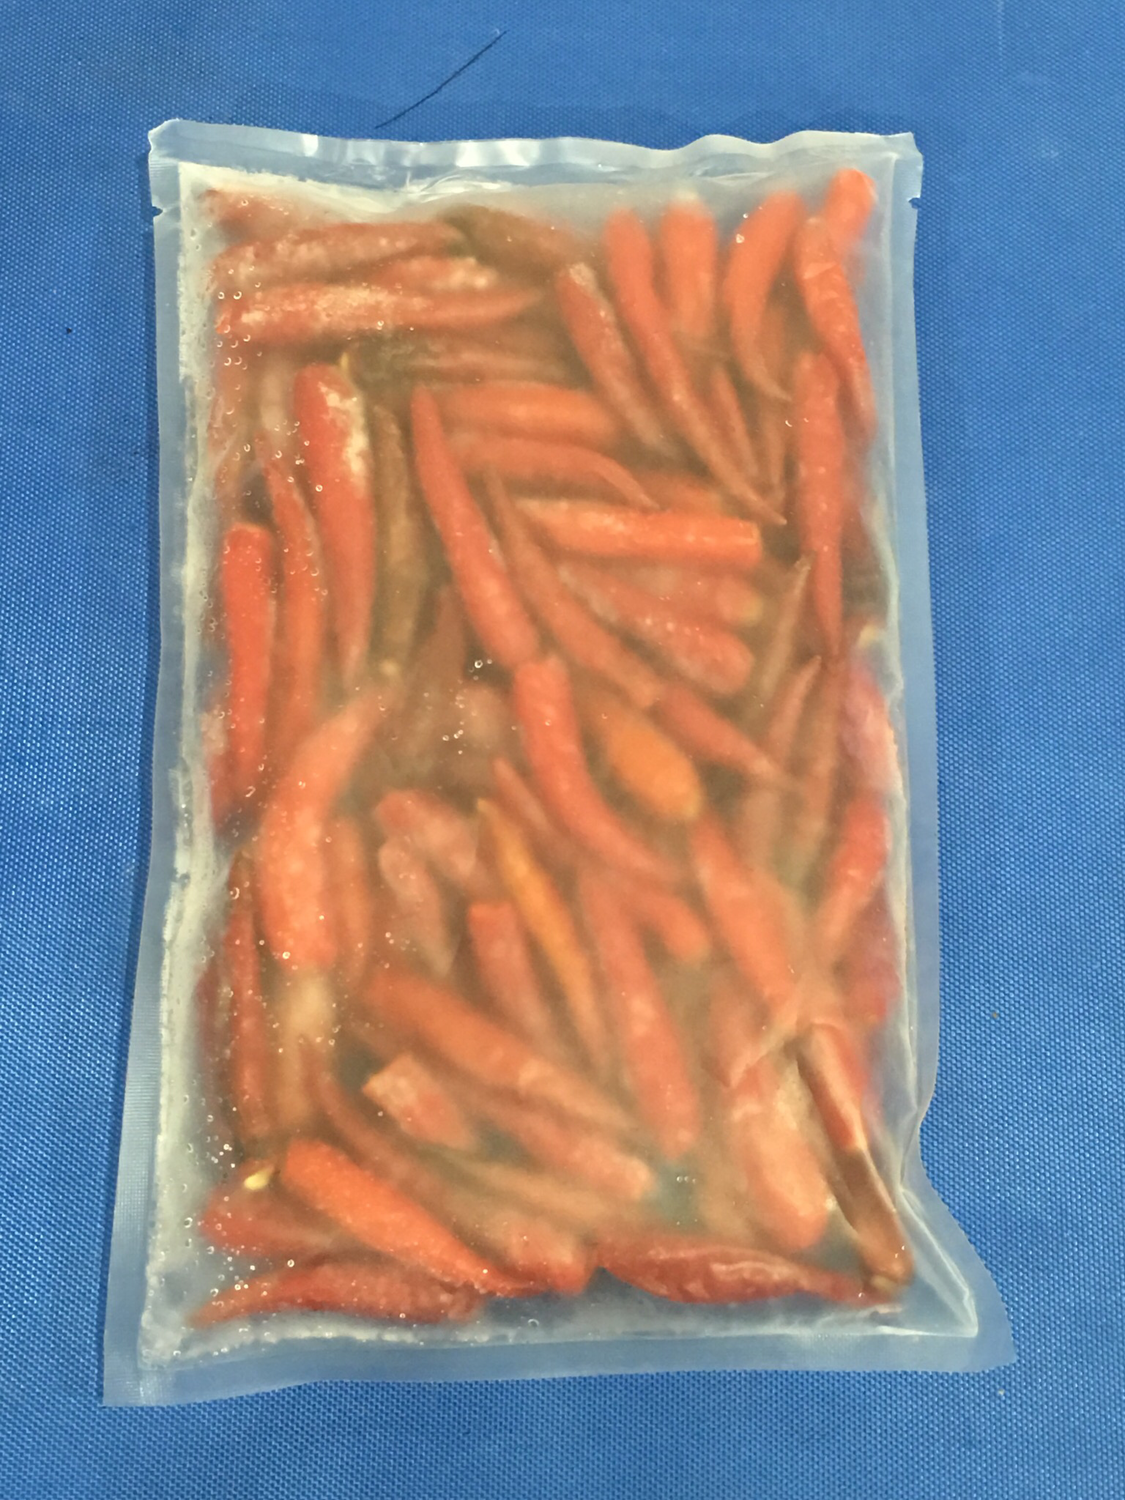 Cabe merah / Red chili 150g